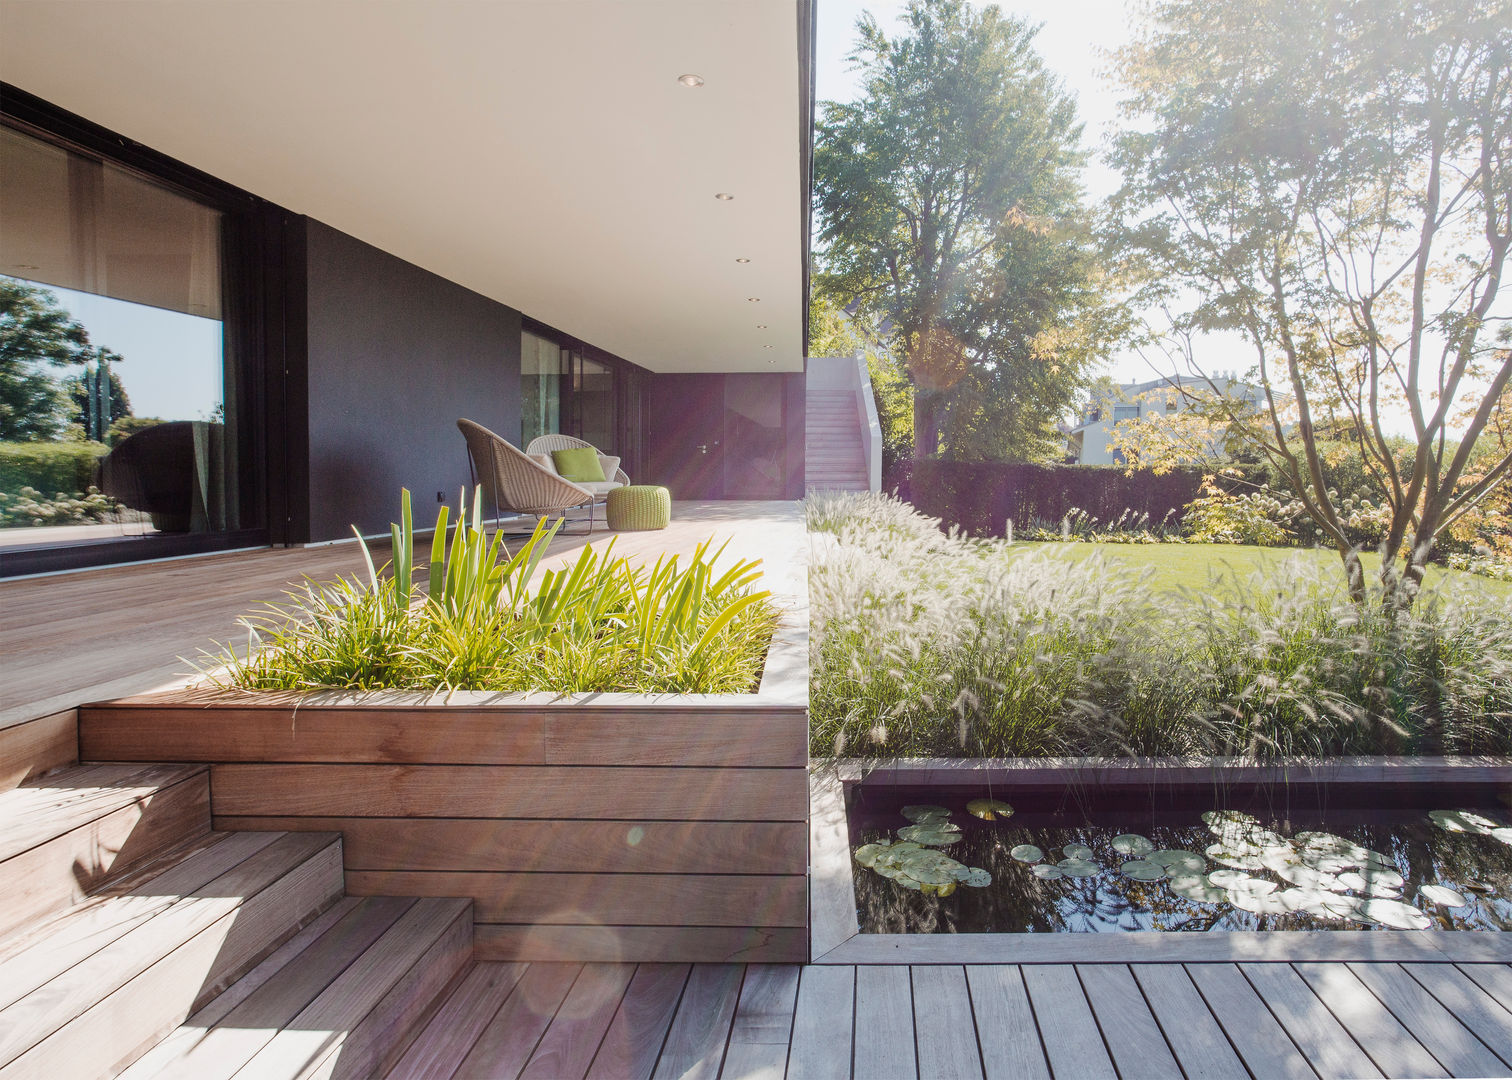 Objekt 336: Traumhaftes Einfamilienhaus mit Panoramablick , meier architekten zürich meier architekten zürich 庭院 木頭 Wood effect